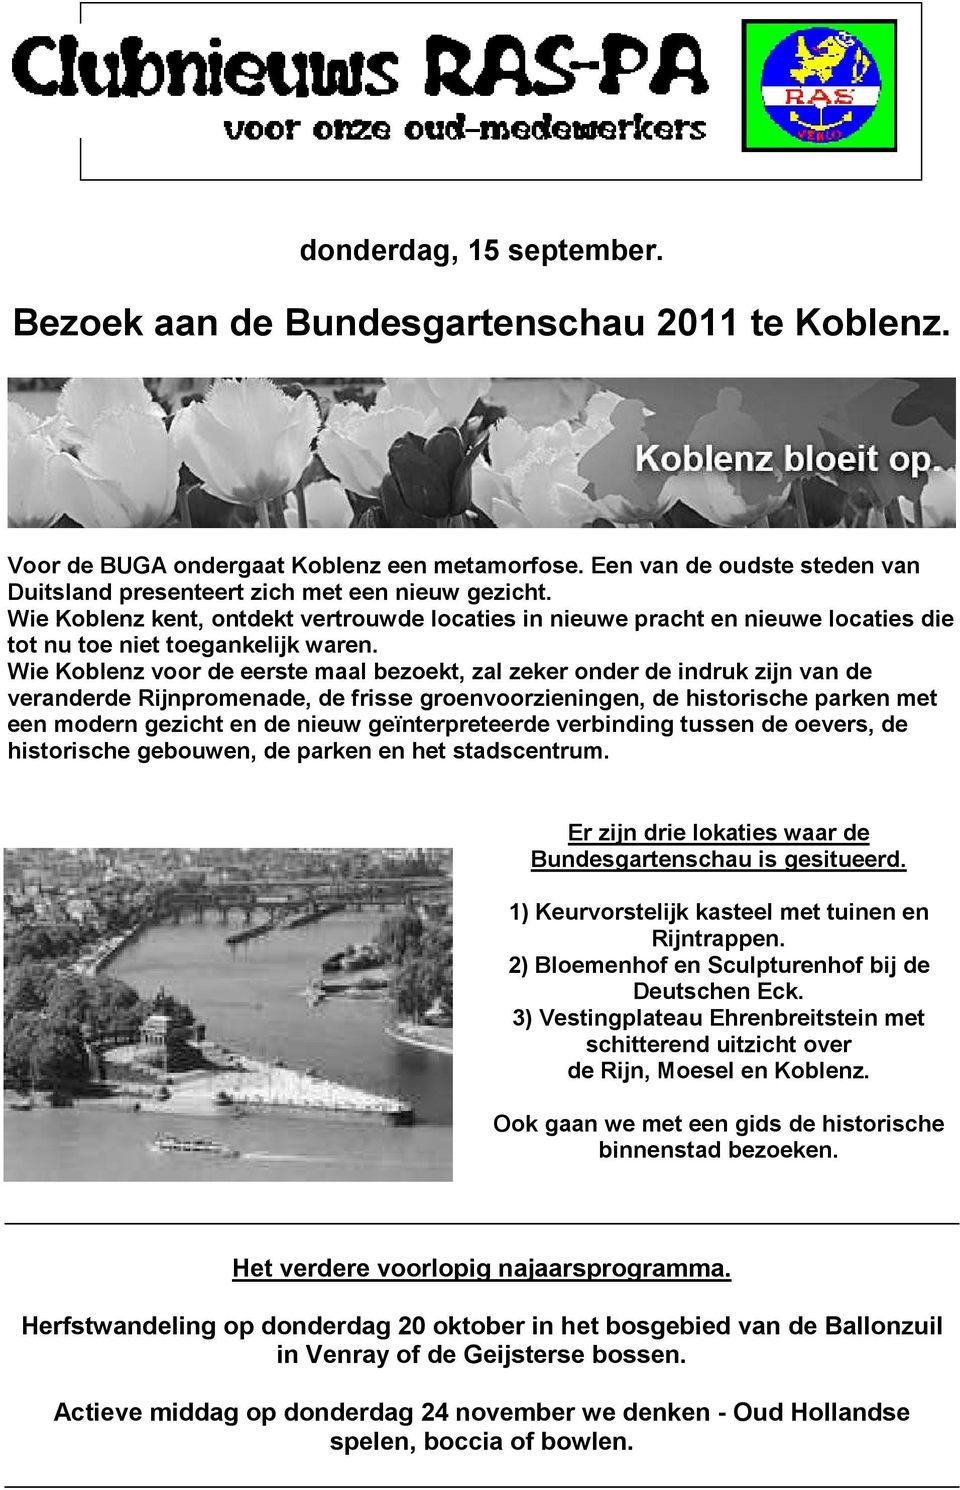 Wie Koblenz voor de eerste maal bezoekt, zal zeker onder de indruk zijn van de veranderde Rijnpromenade, de frisse groenvoorzieningen, de historische parken met een modern gezicht en de nieuw